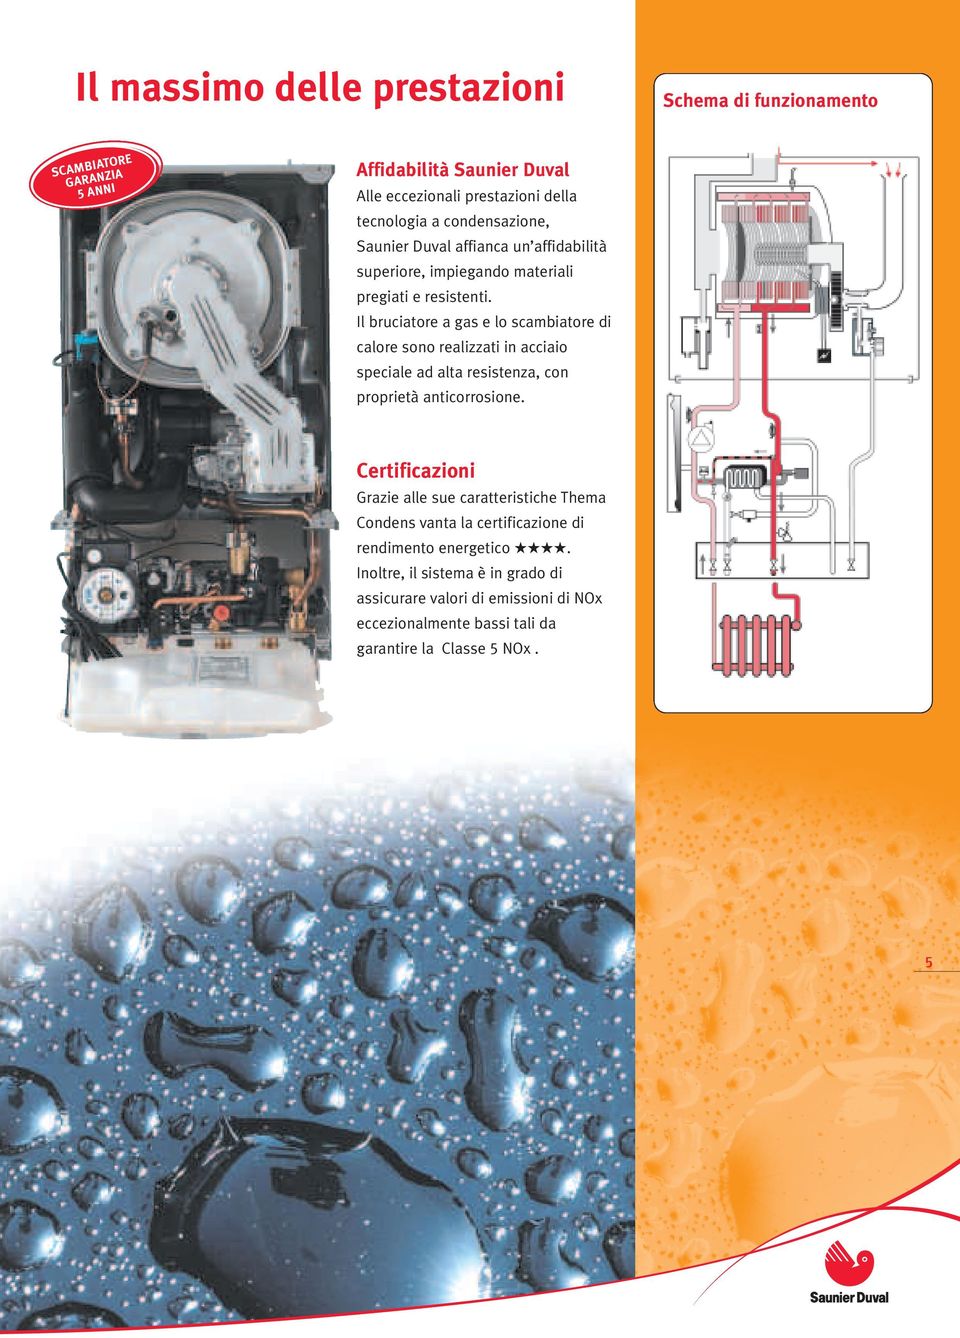 Il bruciatore a gas e lo scambiatore di calore sono realizzati in acciaio speciale ad alta resistenza, con proprietà anticorrosione.